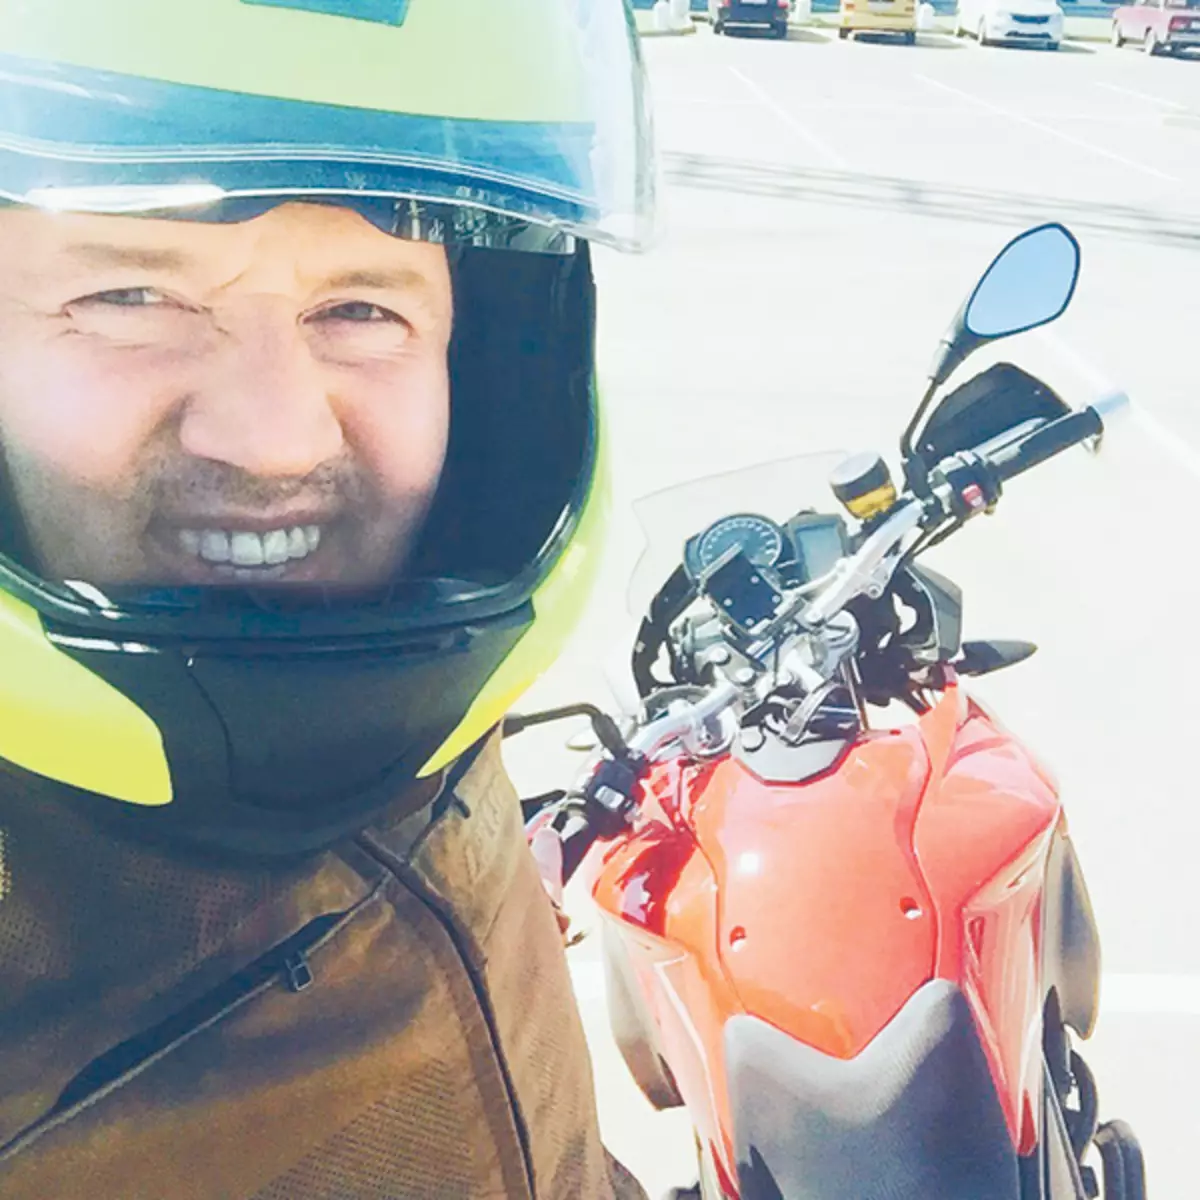 Sergey memanggil dirinya sebagai penunggang motosikal yang bertanggungjawab. Tiada perlumbaan malam